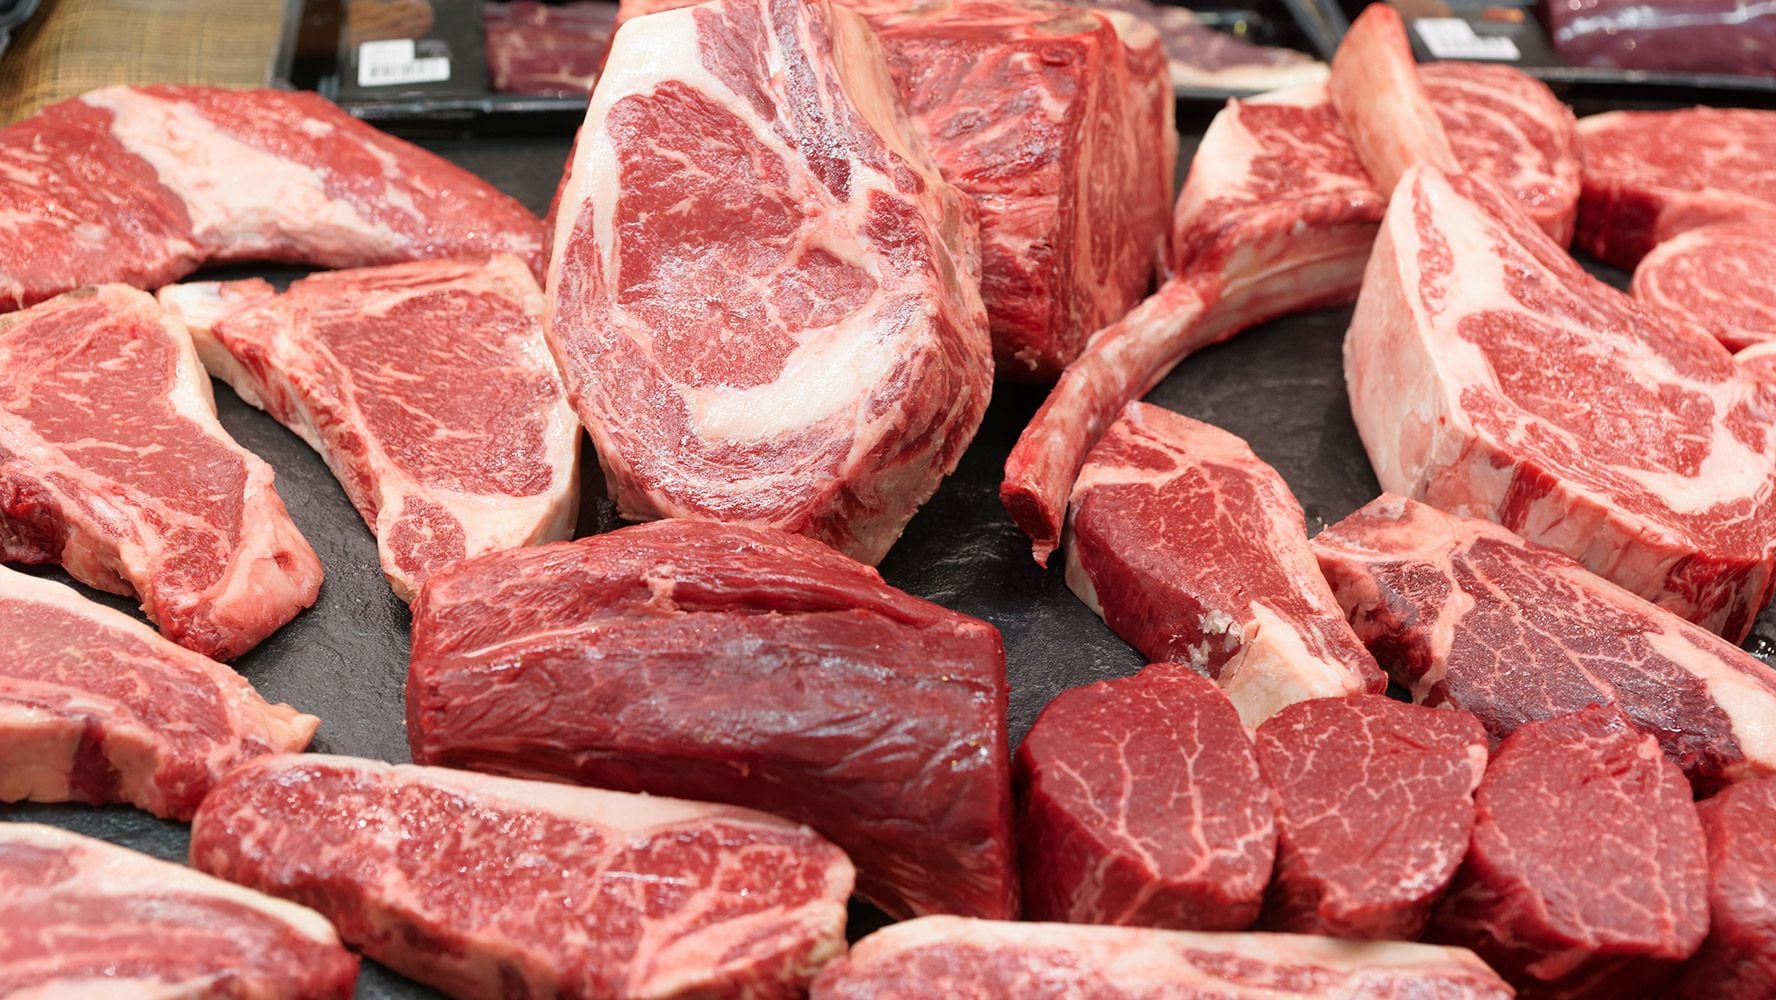 La carne roja es uno de los alimentos que se ha relacionado con las probabilidades de padecer carne. (Foto: Shutterstock).